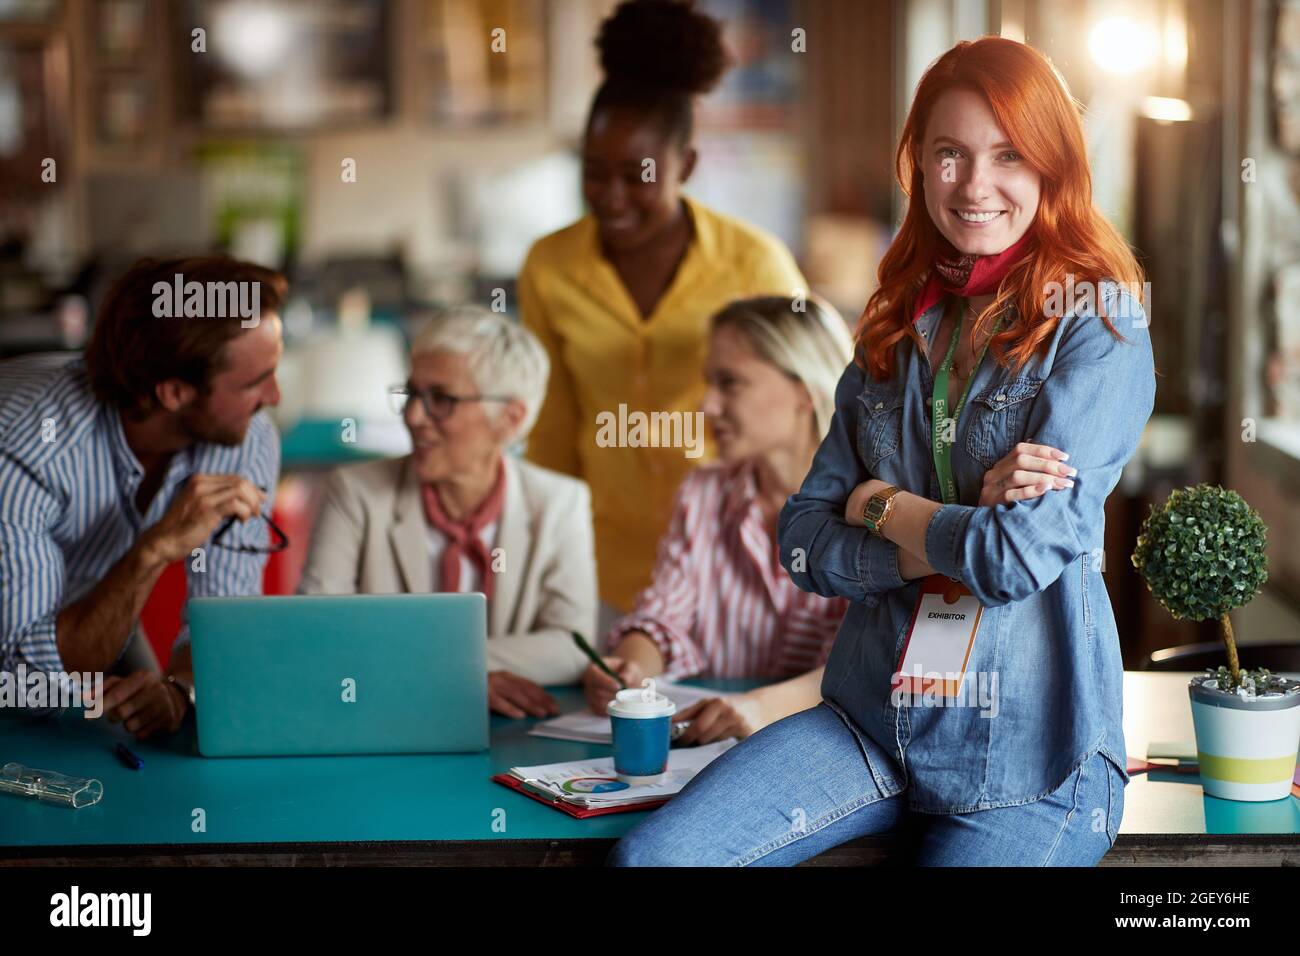 giovane donna rossa adulta che si pone al lavoro di fronte a un gruppo di lavoratori, sorridendo, guardando la macchina fotografica. contatto visivo Foto Stock